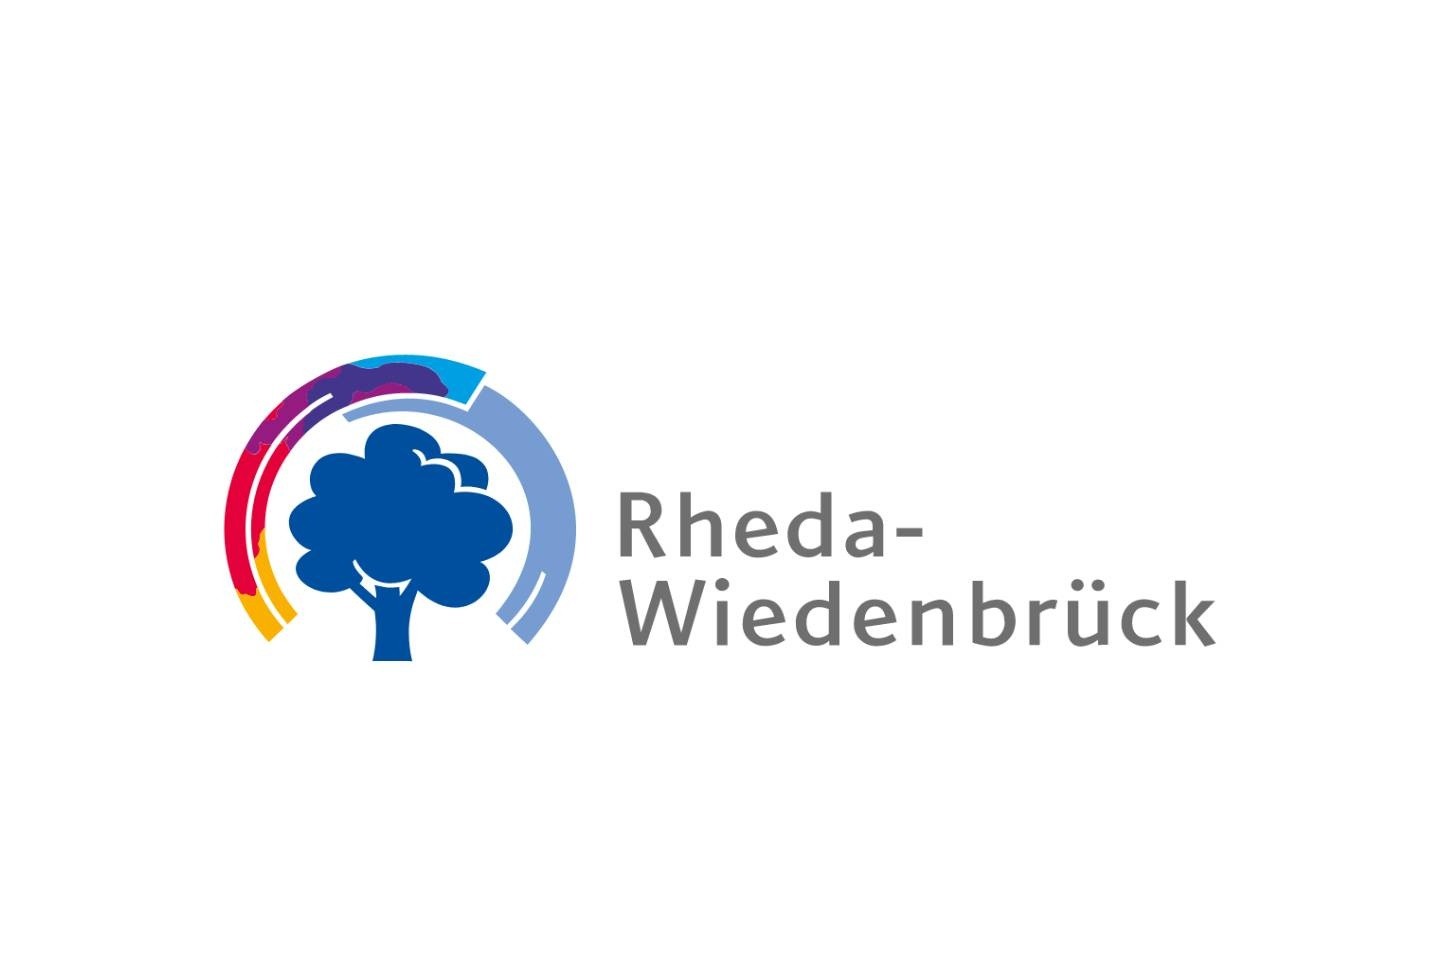 Stadt Rheda-Wiedenbrück